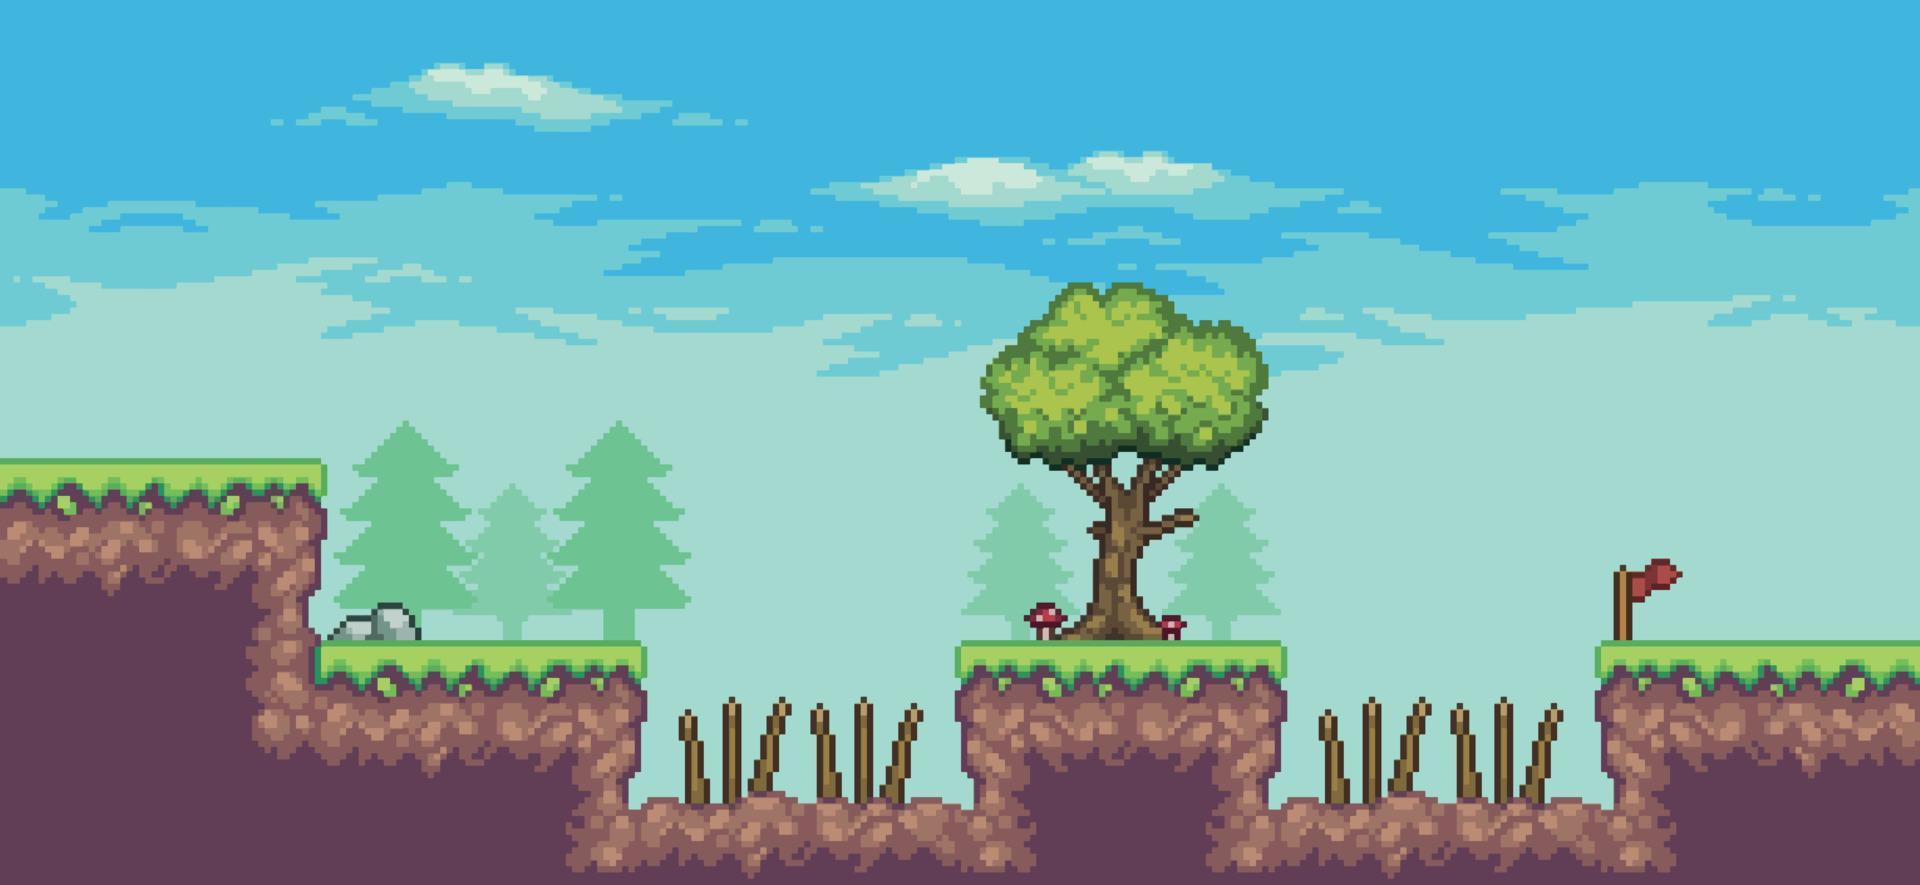 cena de jogo de arcade pixel art com árvores, espinhos, nuvens, pedras e fundo de 8 bits de bandeira vetor